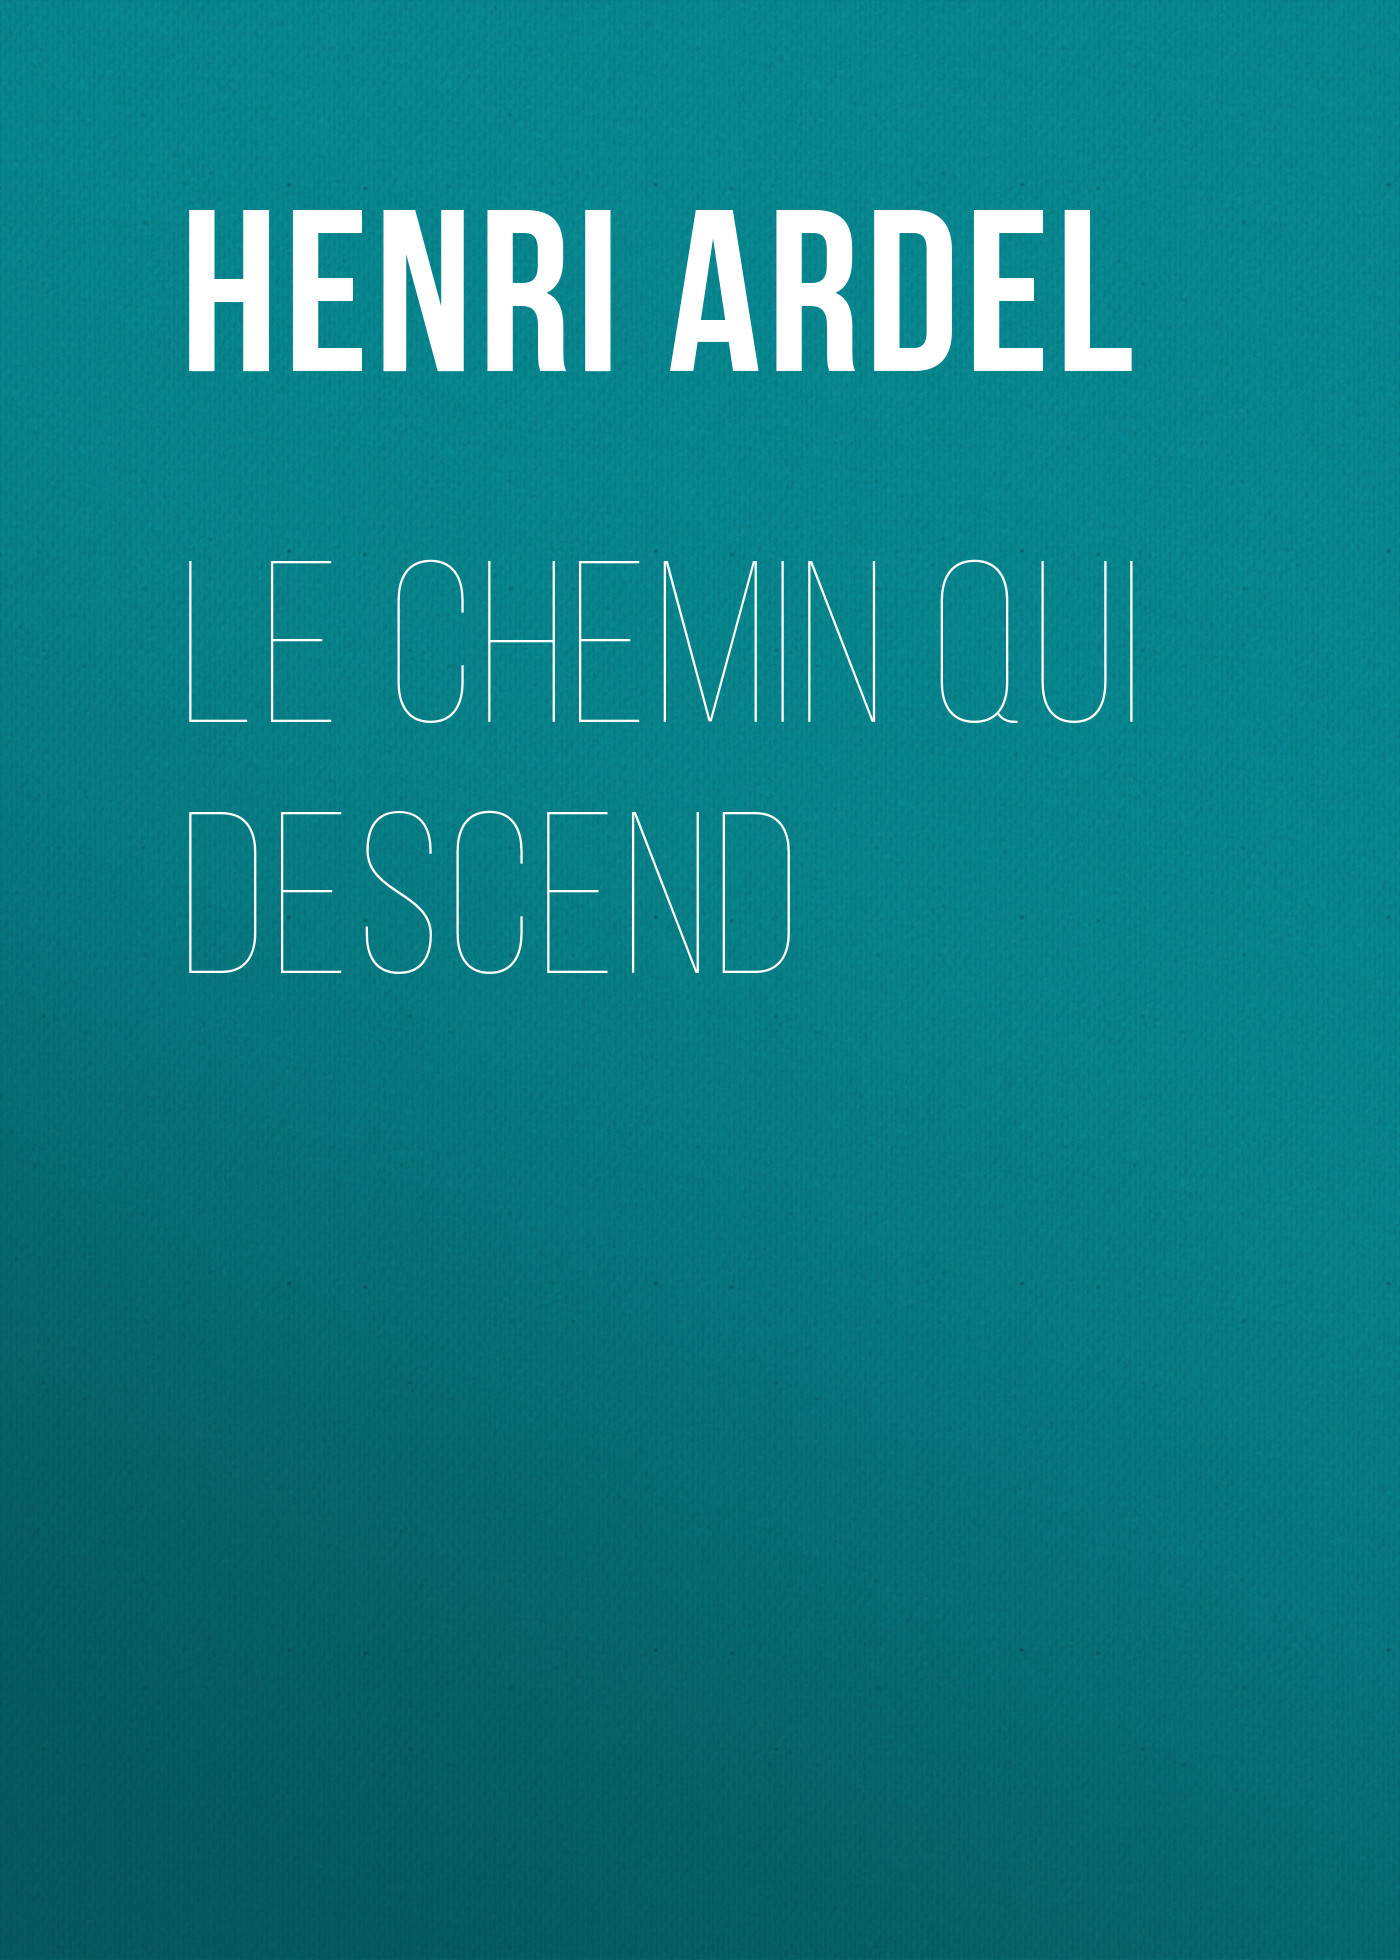 Книга Le chemin qui descend из серии , созданная Henri Ardel, может относится к жанру Зарубежная старинная литература, Зарубежная классика. Стоимость электронной книги Le chemin qui descend с идентификатором 24176180 составляет 0 руб.